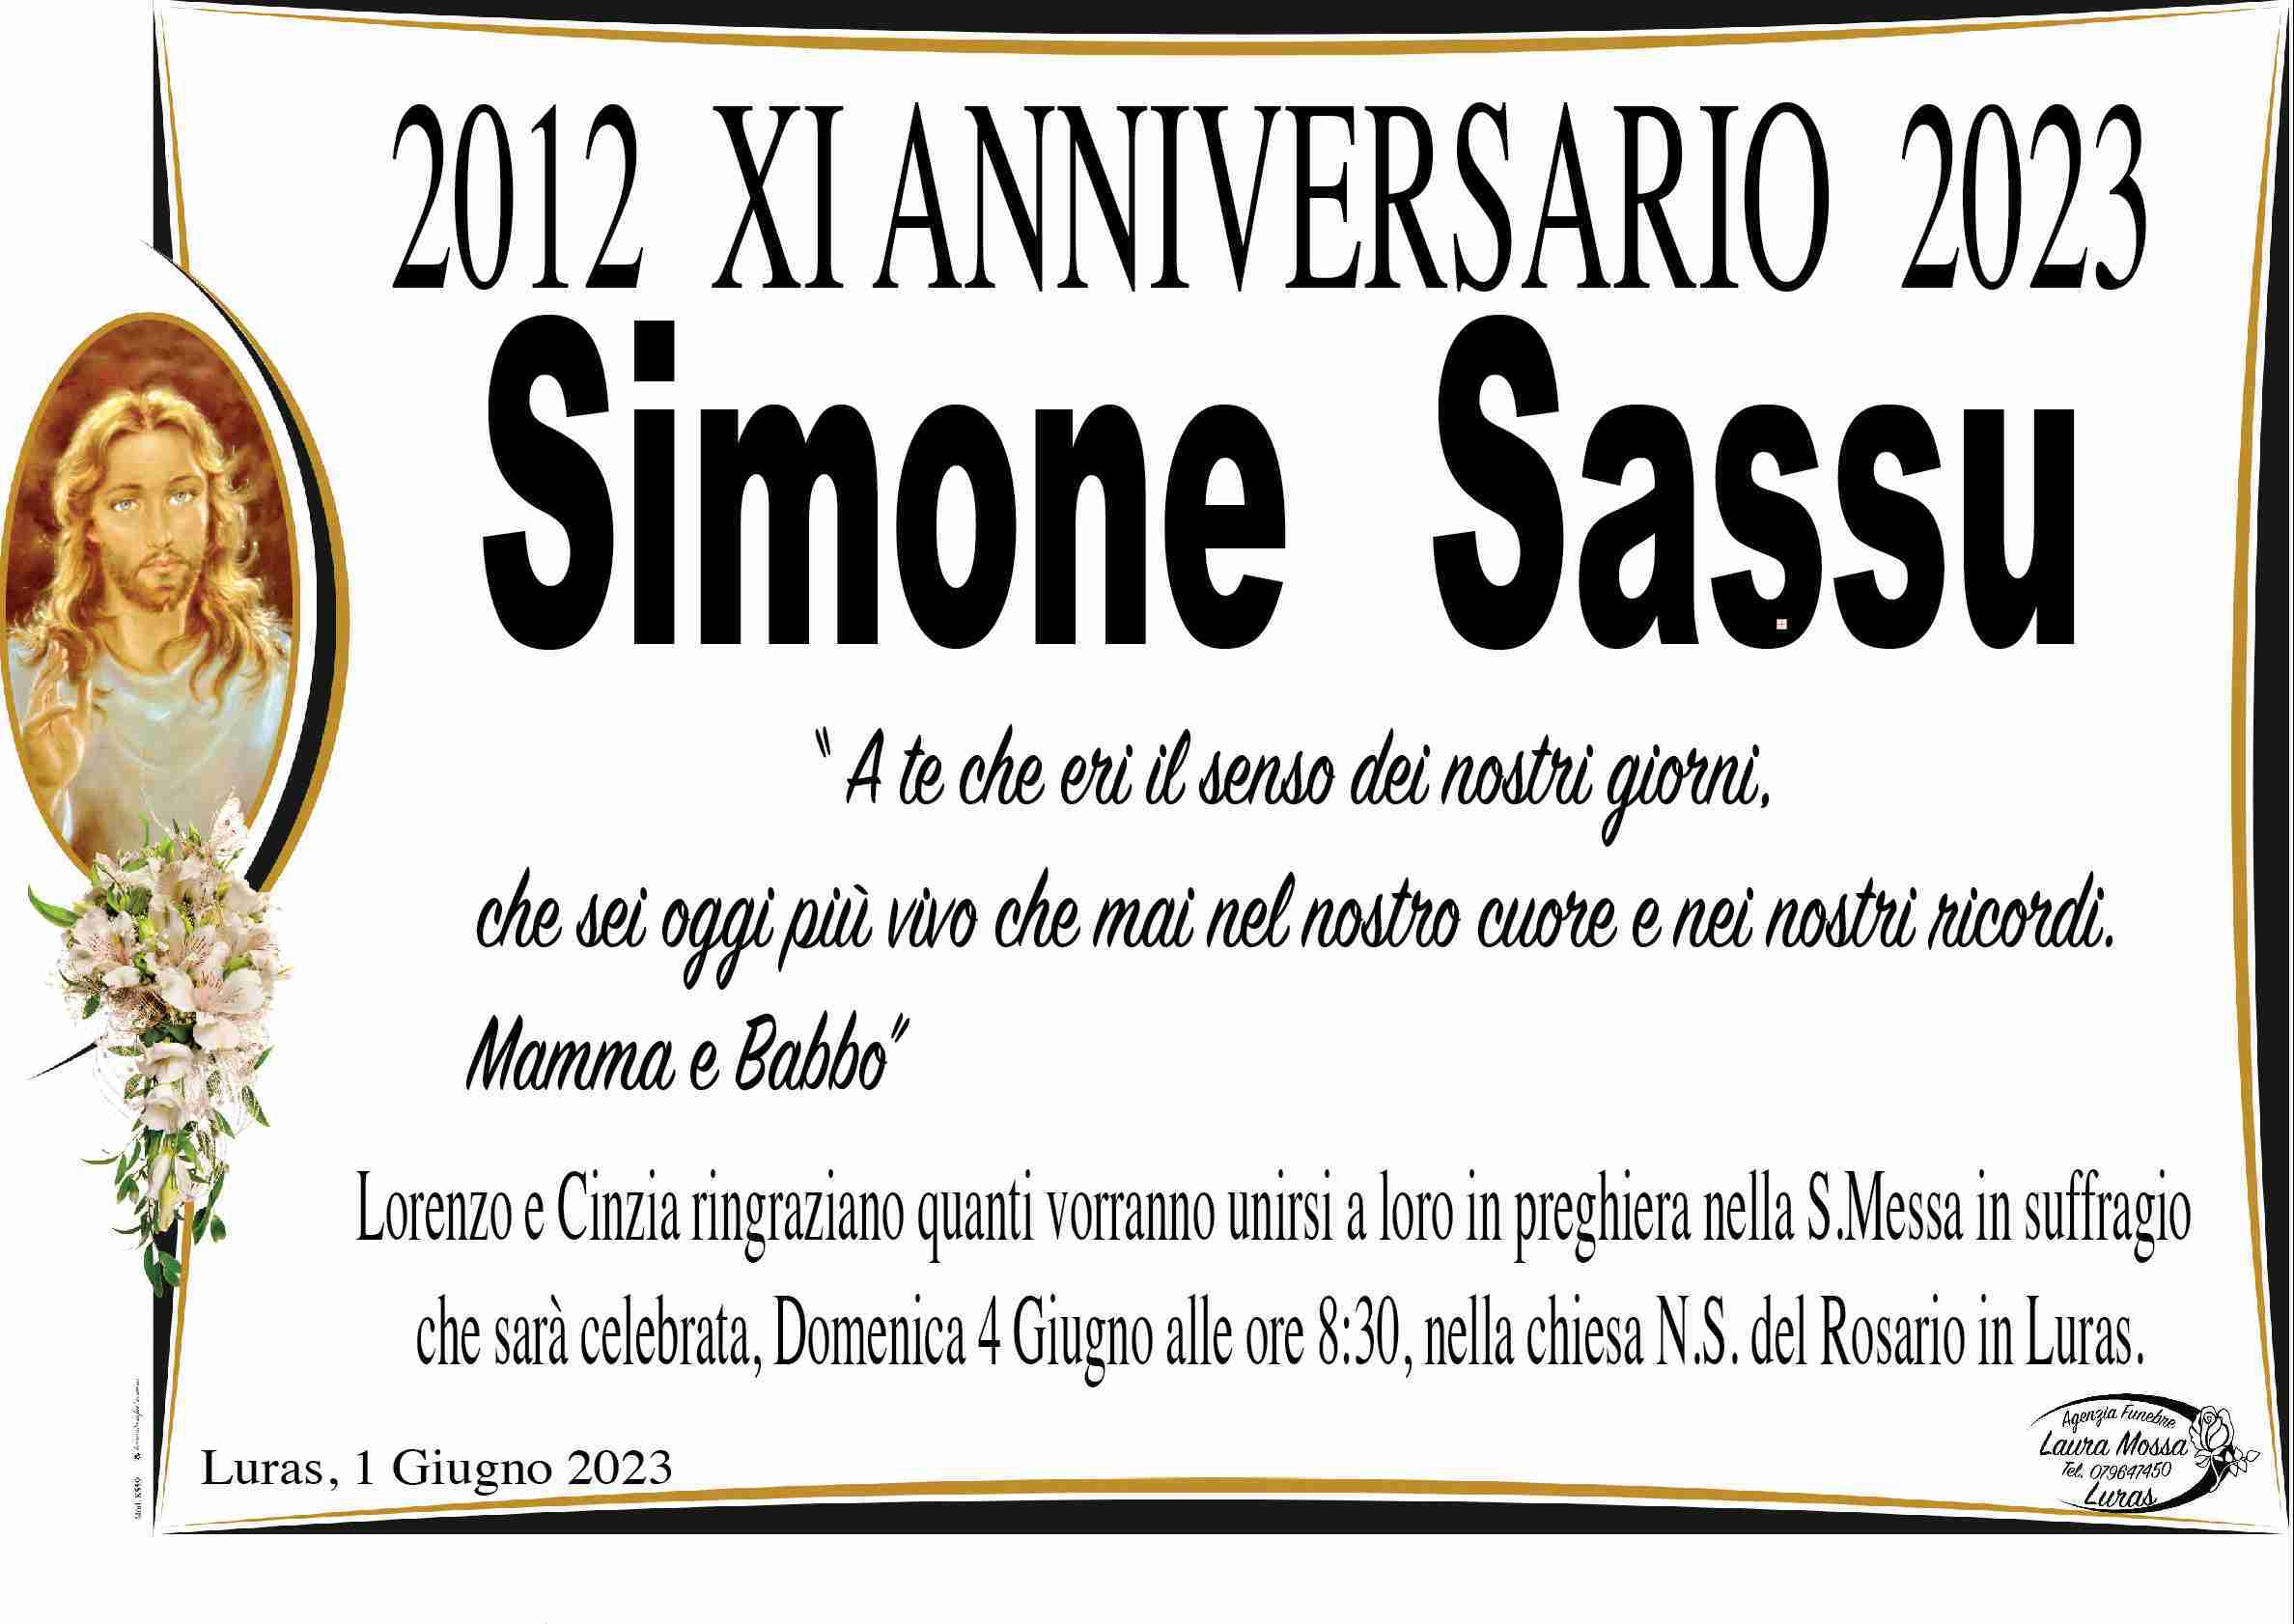 Simone Sassu